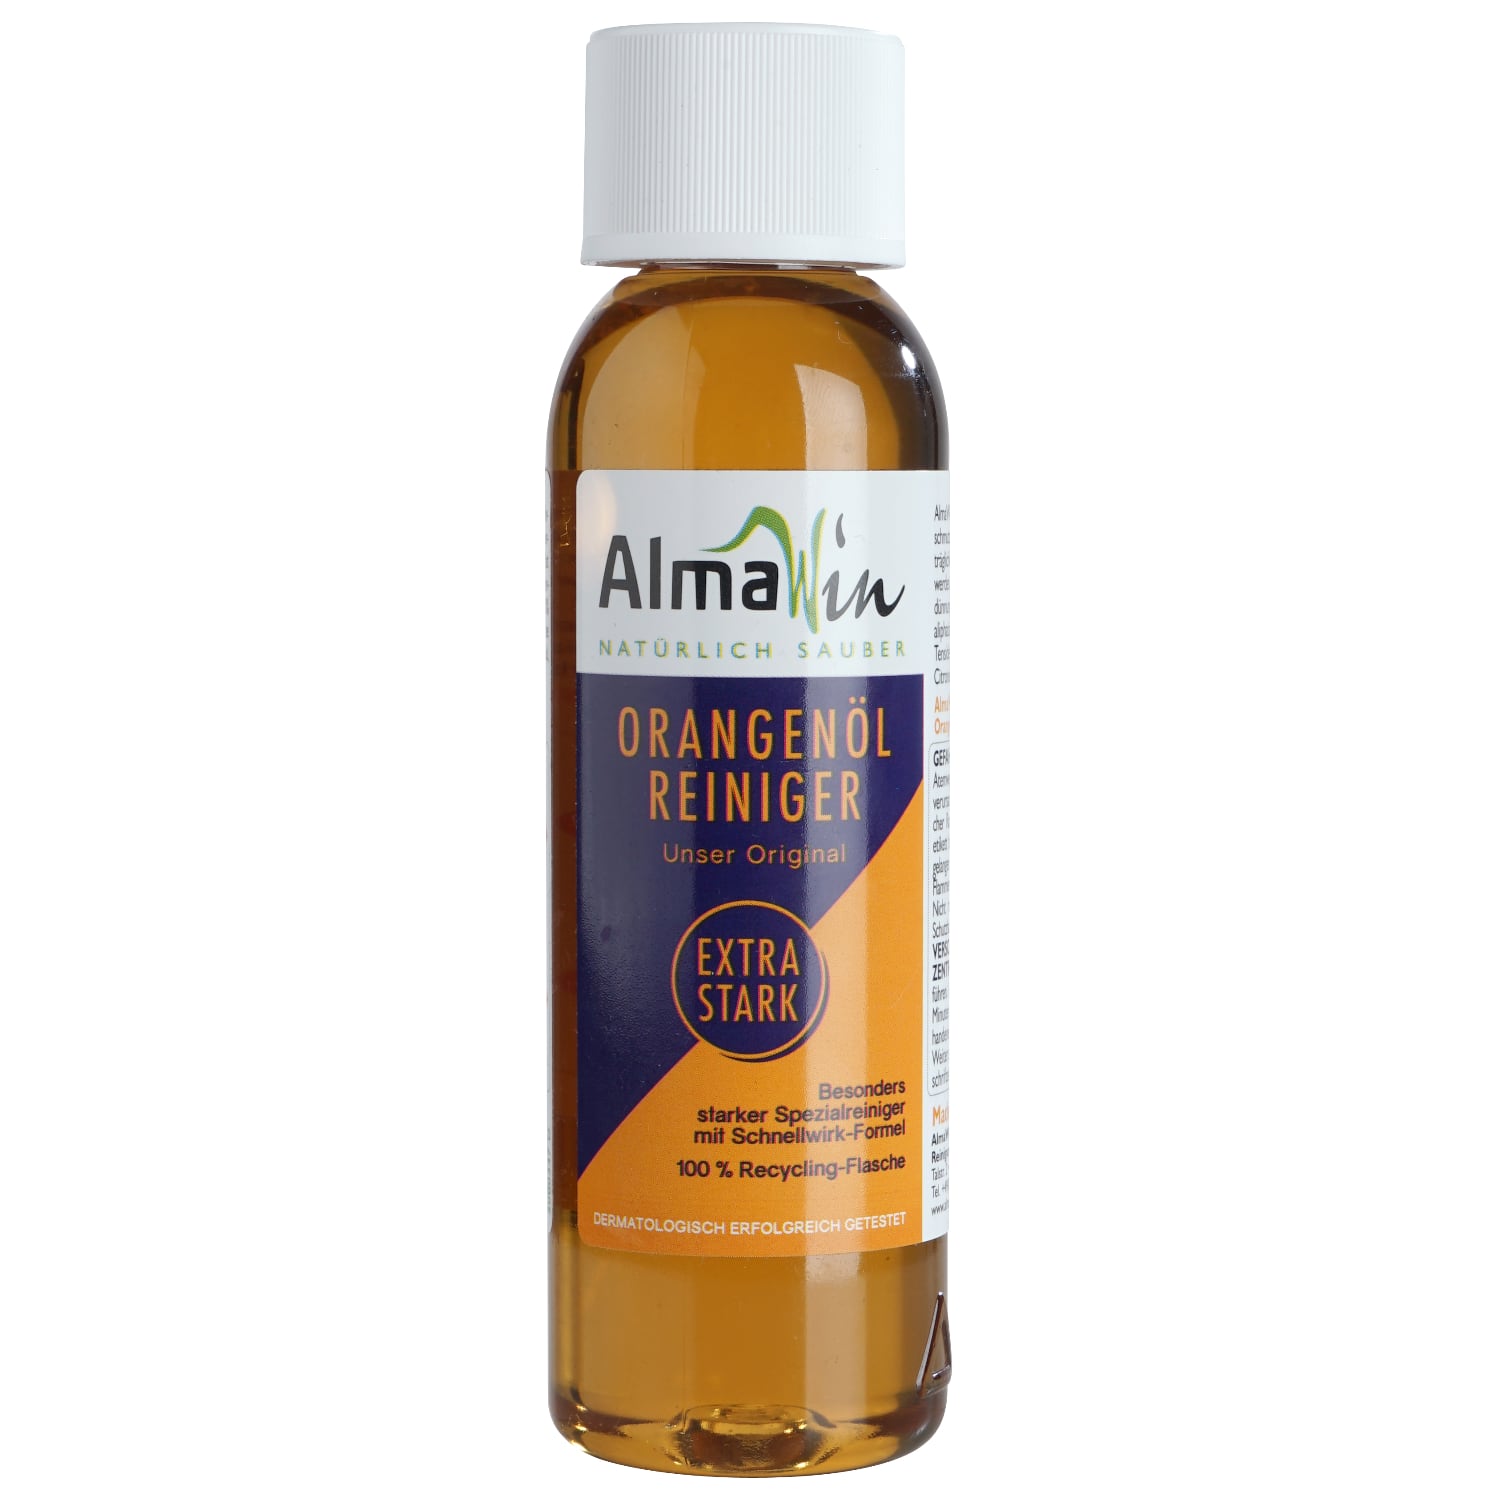 AlmaWin Orangenöl-Reiniger Extra Stark, 0,125 l